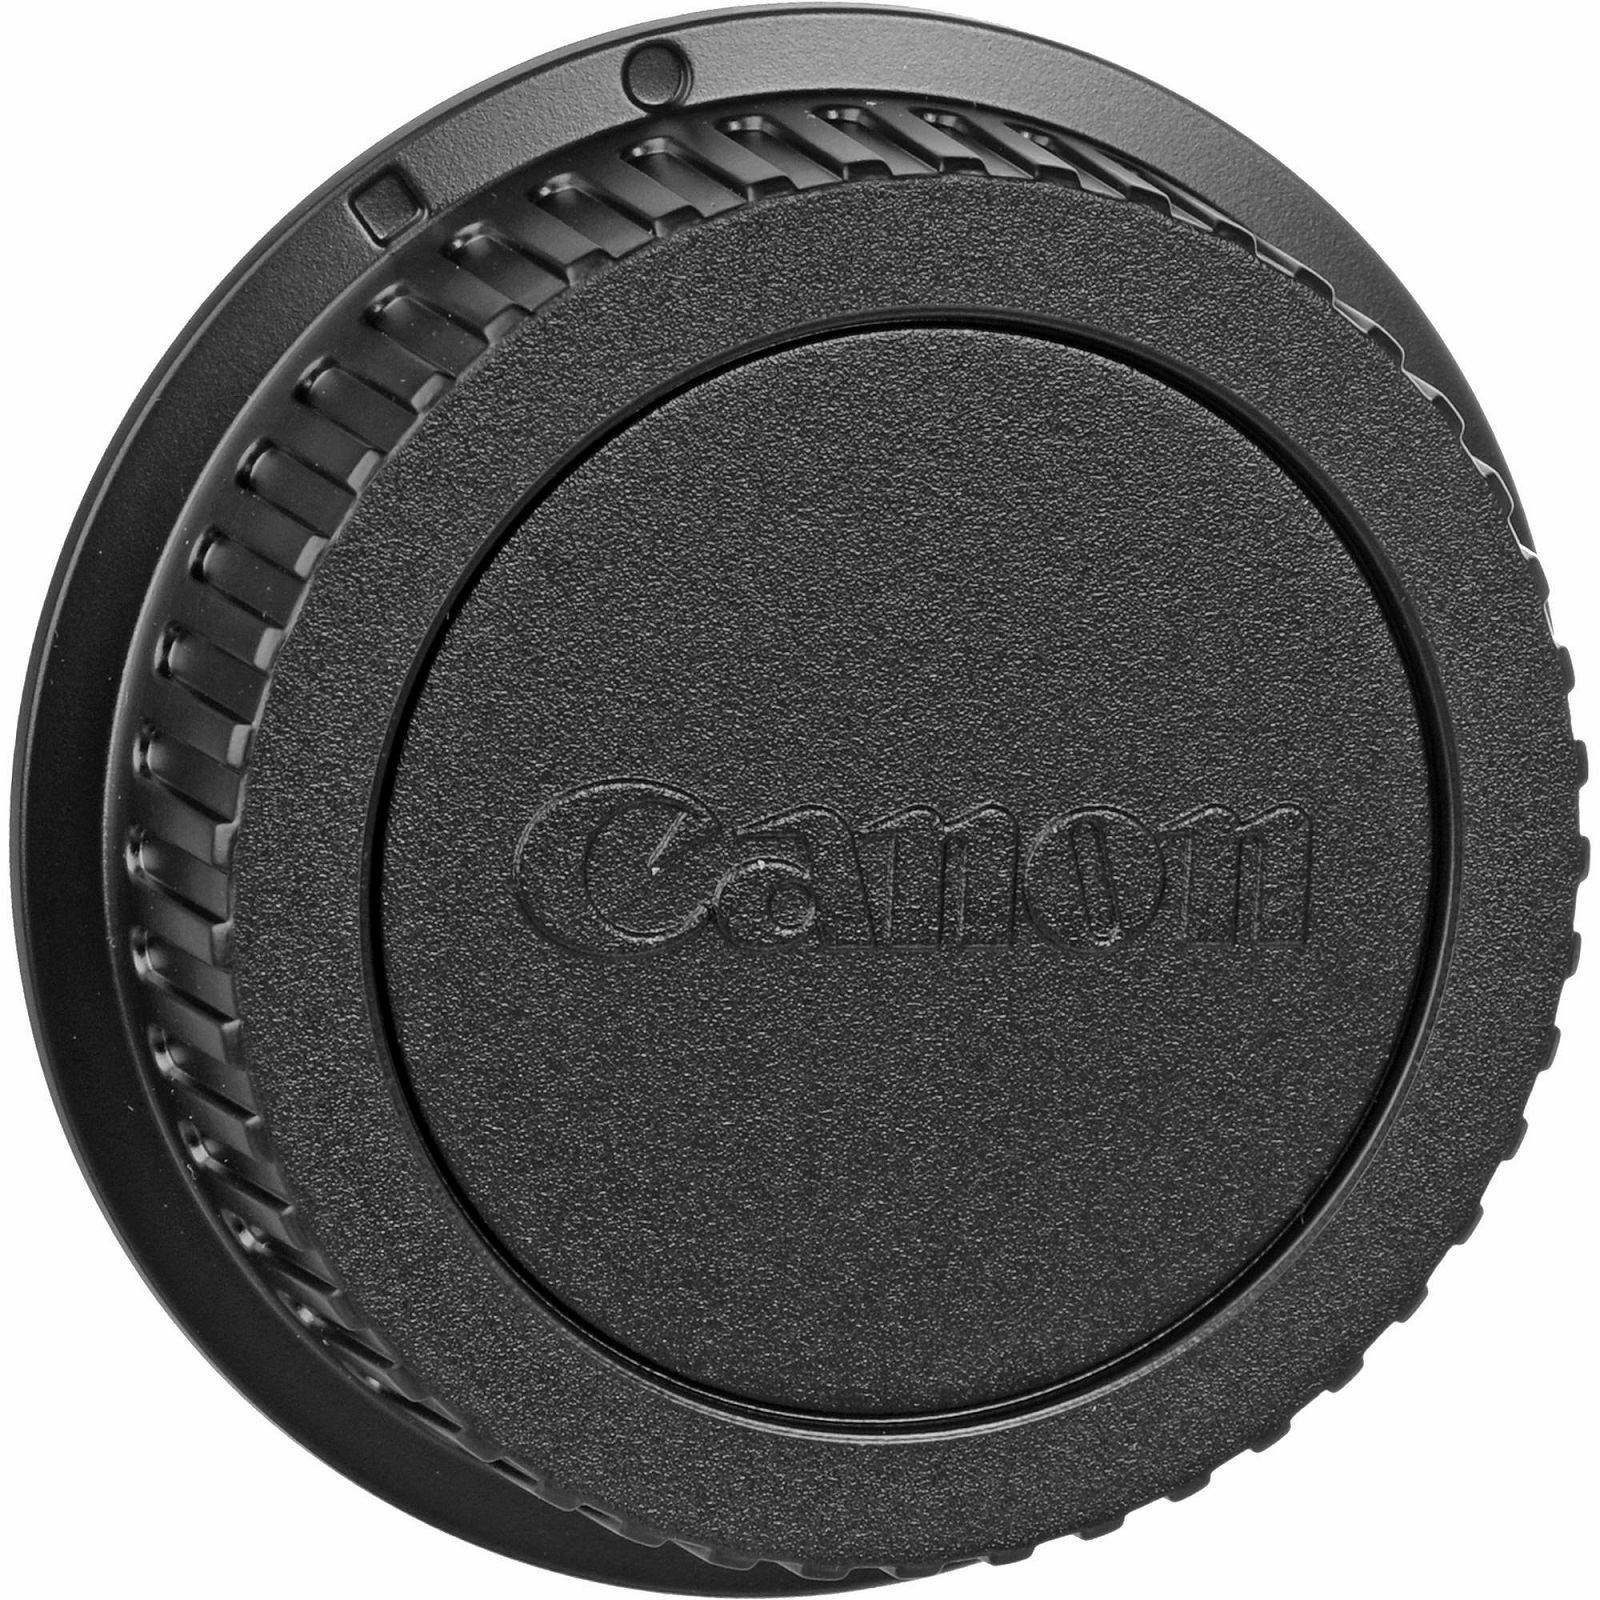 Canon EOS 2000D + 18-55 IS II Black DSLR Digitalni fotoaparat s objektivom EF-S 18-55mm f/3.5-5.6 (2728C028AA)